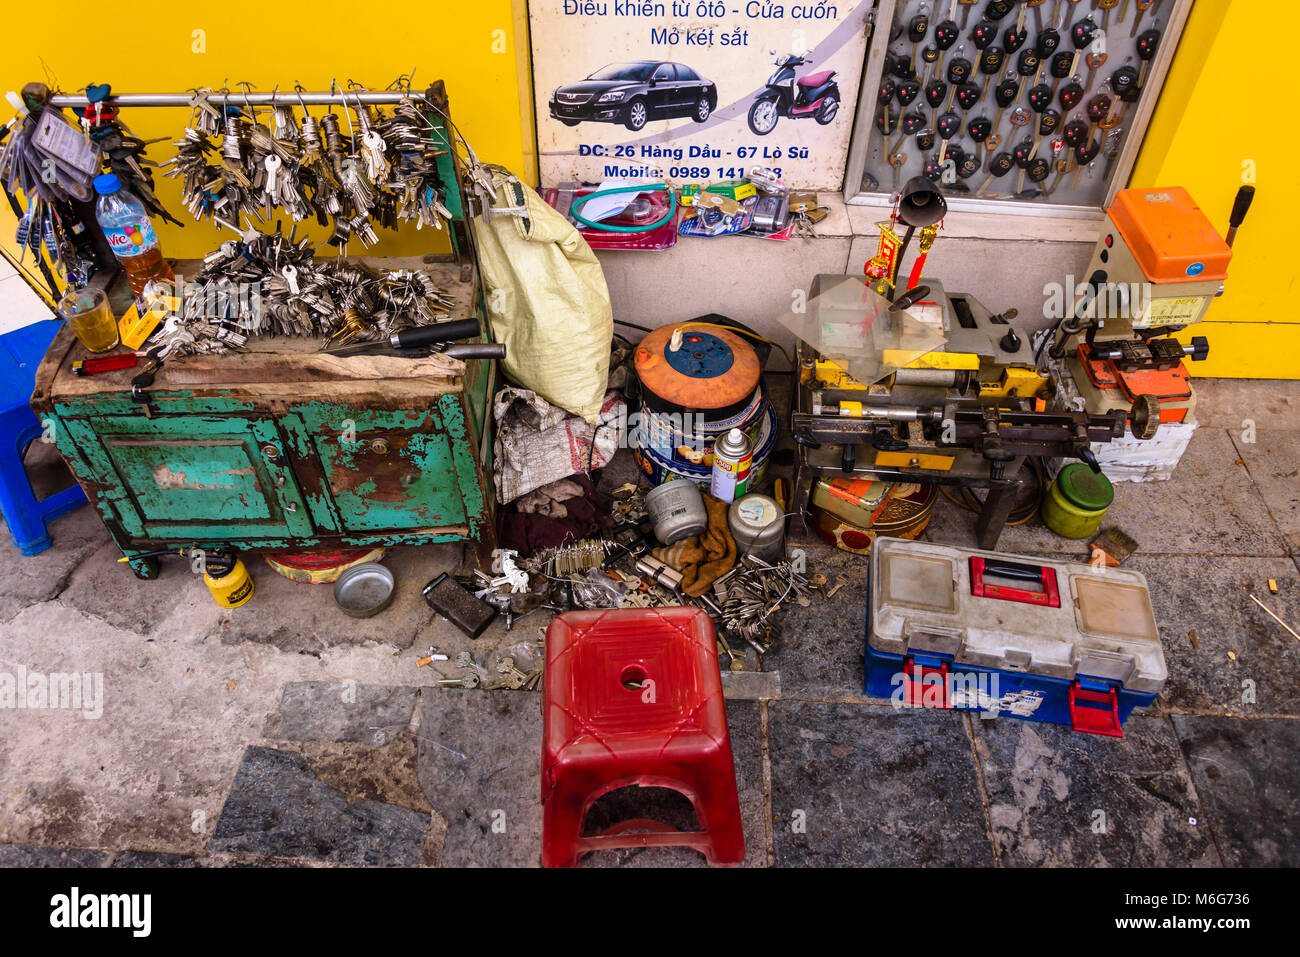 A pop-up locksmiths workshop in Hanoi, Vietnam Stock Photo